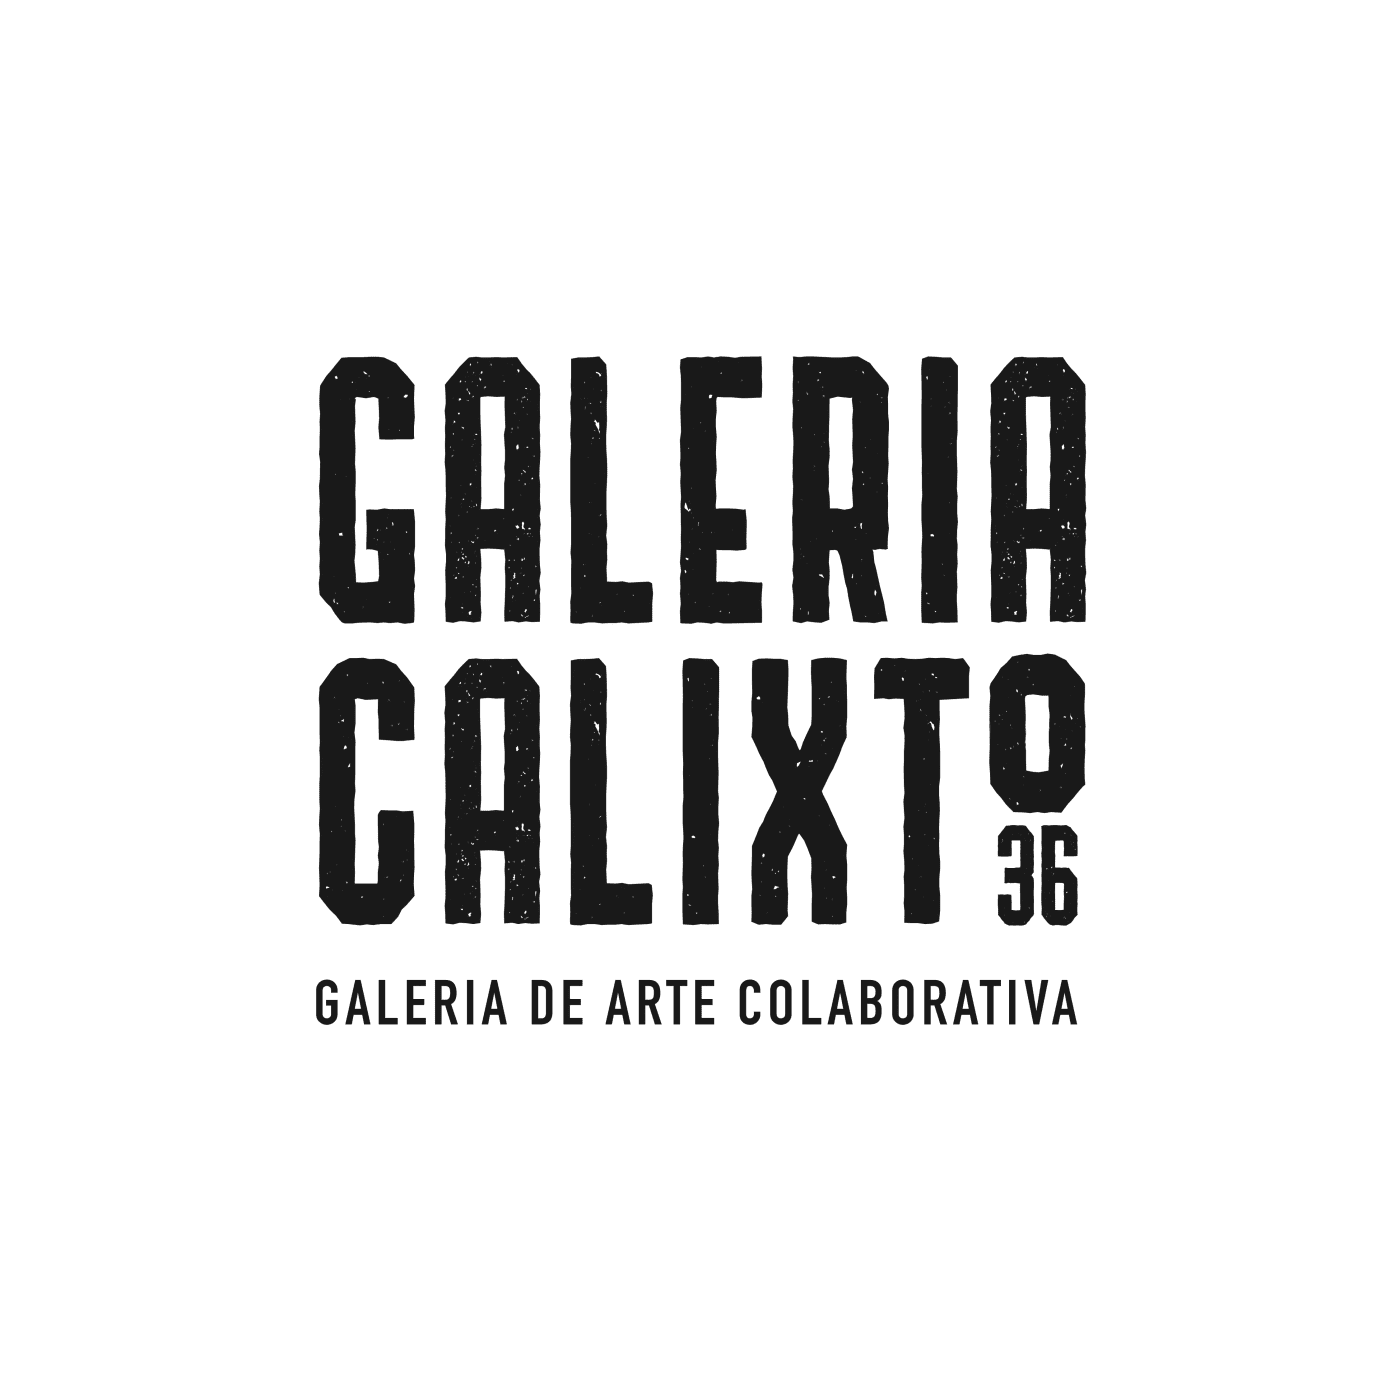 GALERIA CALIXTO 36